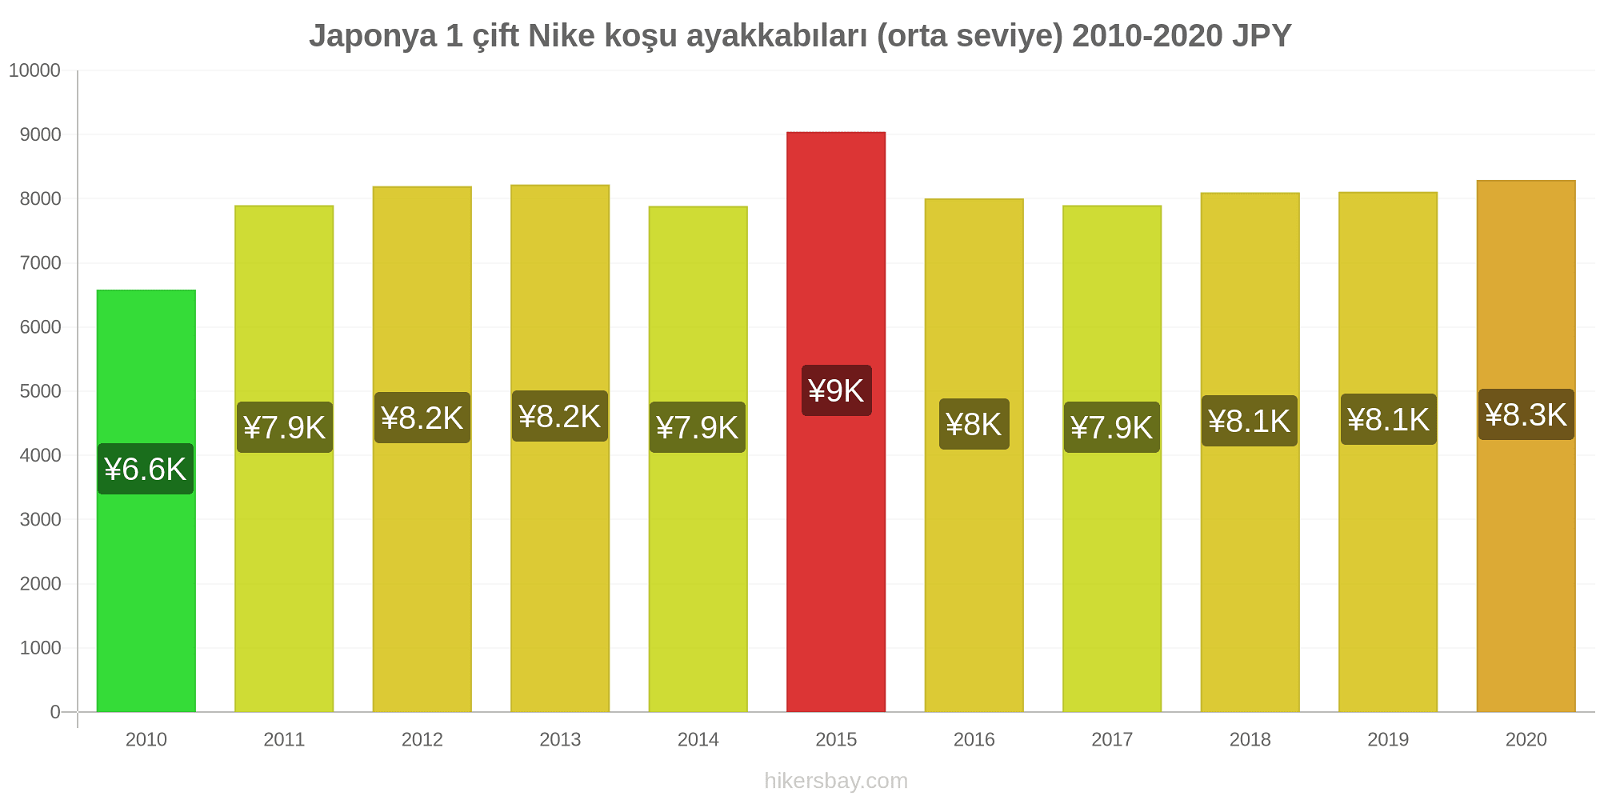 Japonya fiyat değişiklikleri 1 çift Nike koşu ayakkabıları (orta seviye) hikersbay.com